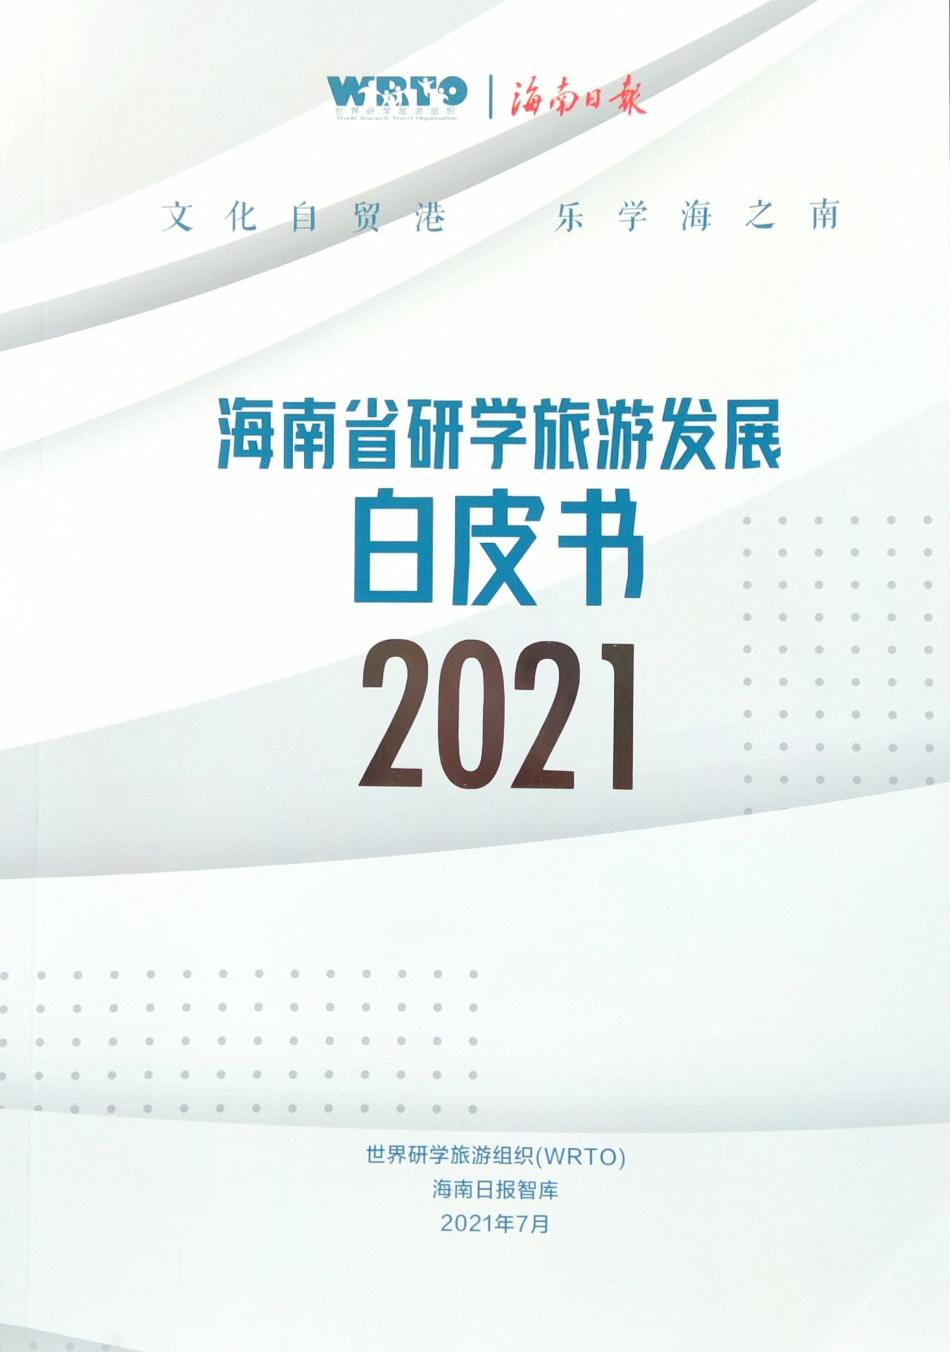 杨春虹副会长在第二届世界研学旅游大会上发布《海南省研学旅游发展白皮书》